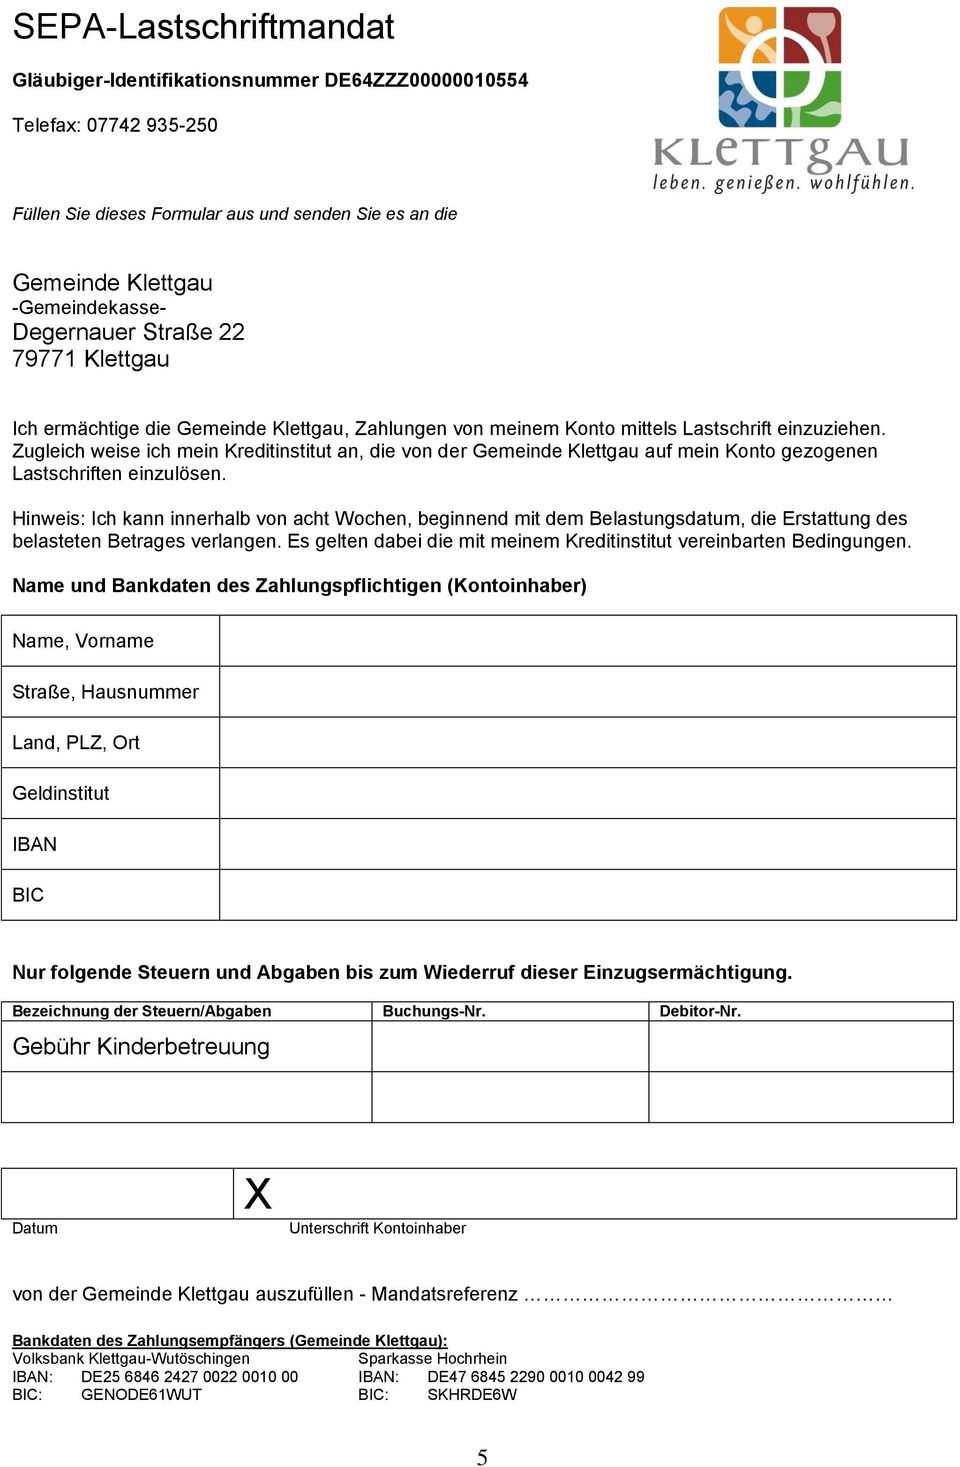 Zugleich weise ich mein Kreditinstitut an, die von der Gemeinde Klettgau auf mein Konto gezogenen Lastschriften einzulösen.